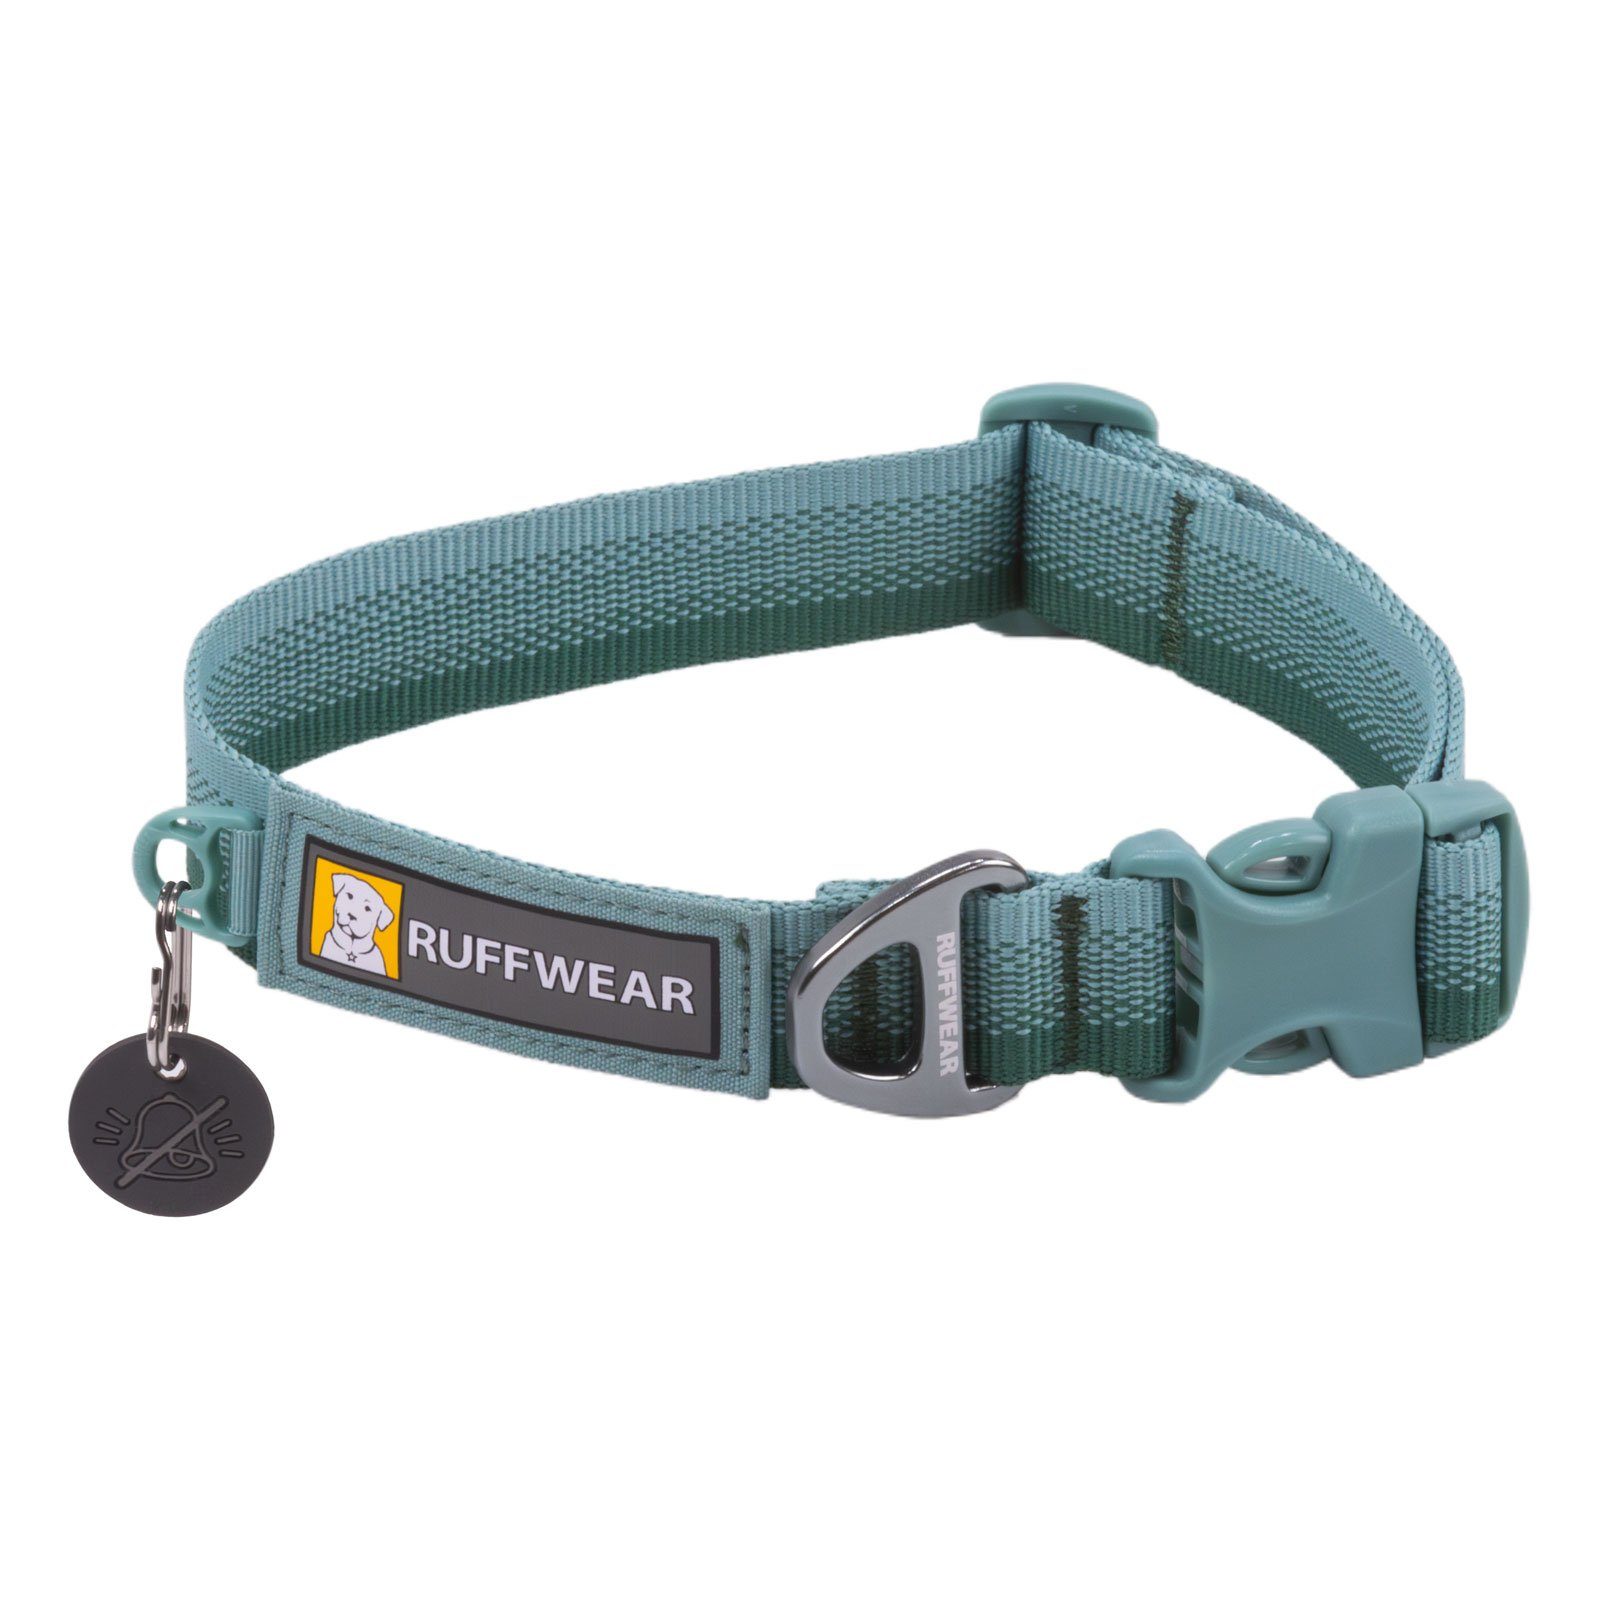 Ruffwear Hunde-Halsband FRONT RANGE™ Collar River Rock Green, 100% Polyester Tubelok™ Schlauchband (16% recycled), Halsband für alltägliche Abenteuer.